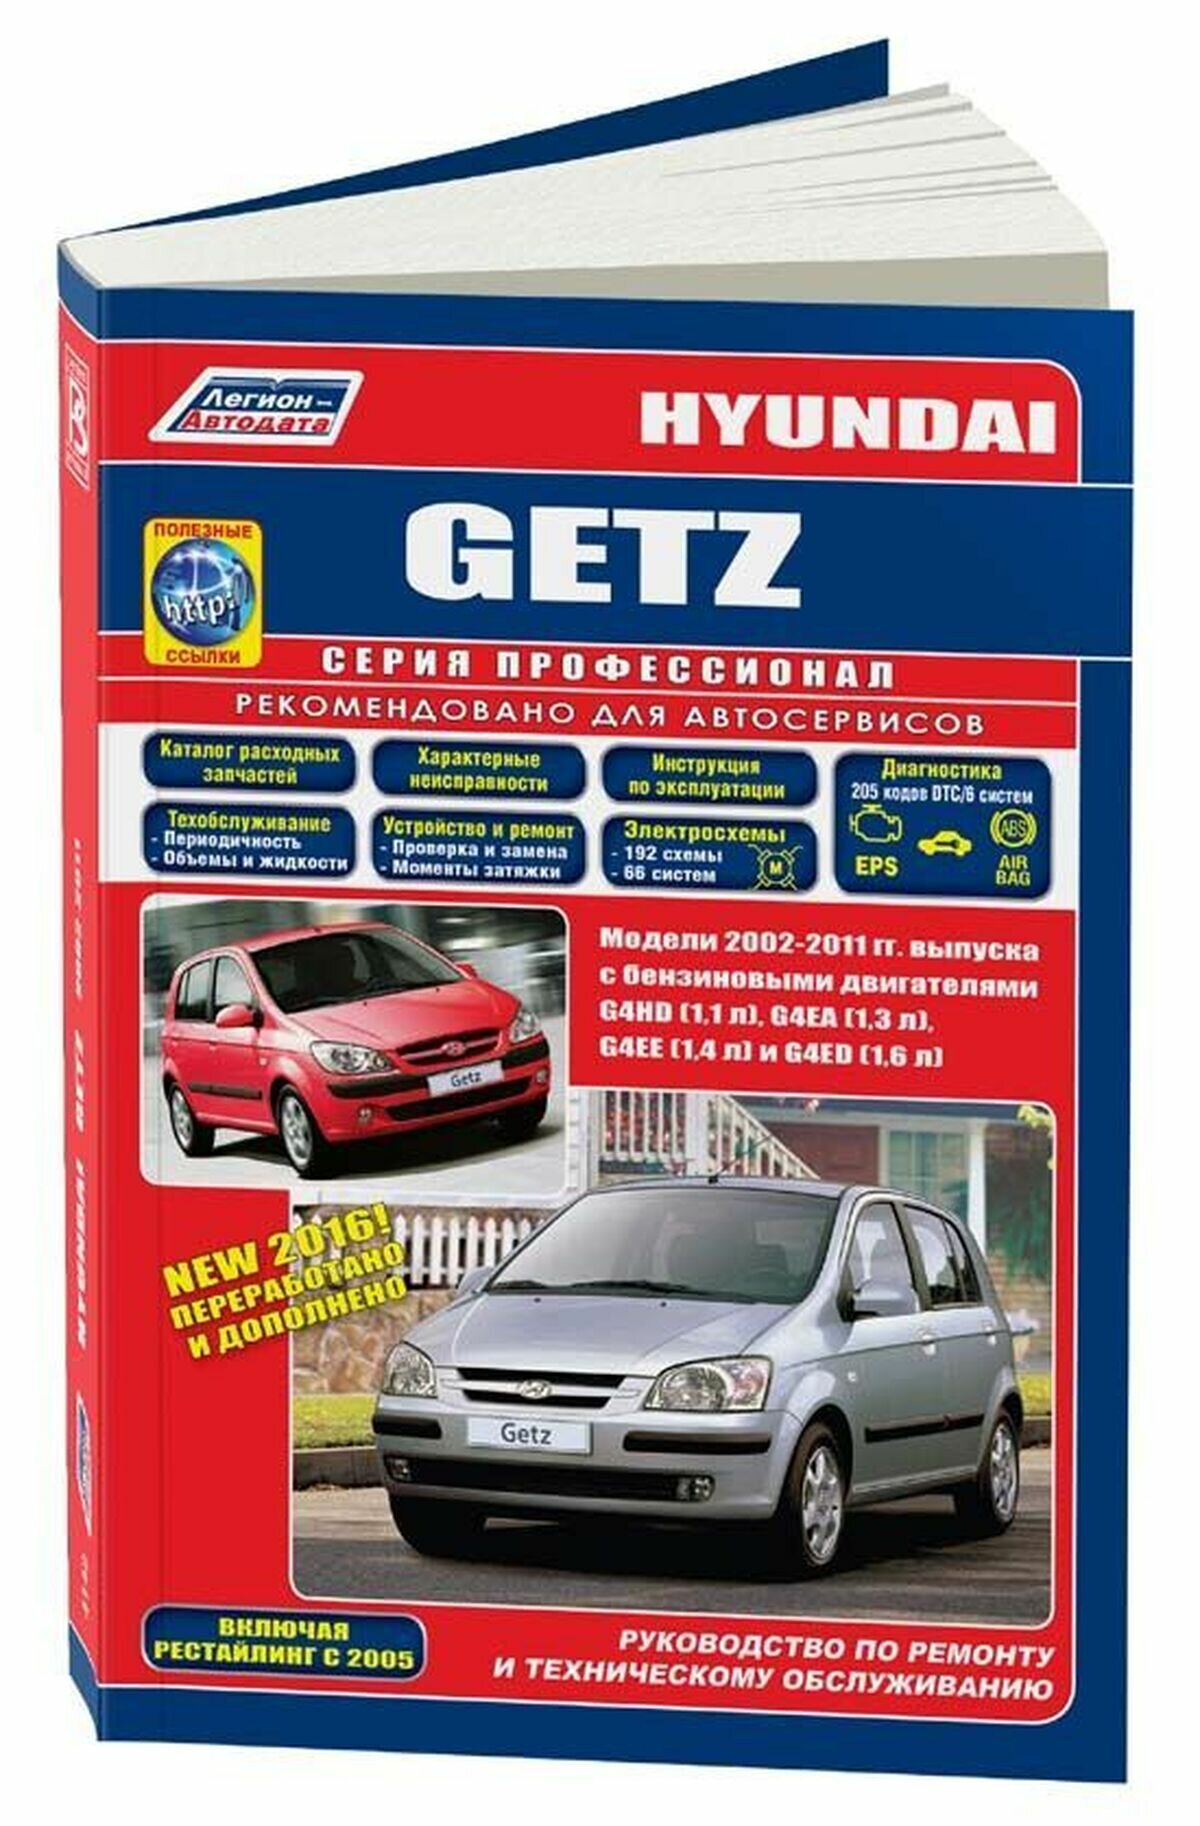 Hyundai Getz. Модели 2002-2011 гг. выпуска c бензиновыми двигателями G4HD (1,1 л.), G4EA (1,3 л.), G4EE (1,4 л.) и G4ED (1,6 л.). Включая рестайлинг с 2005 года. Руководство по ремонту и техническому - фото №1